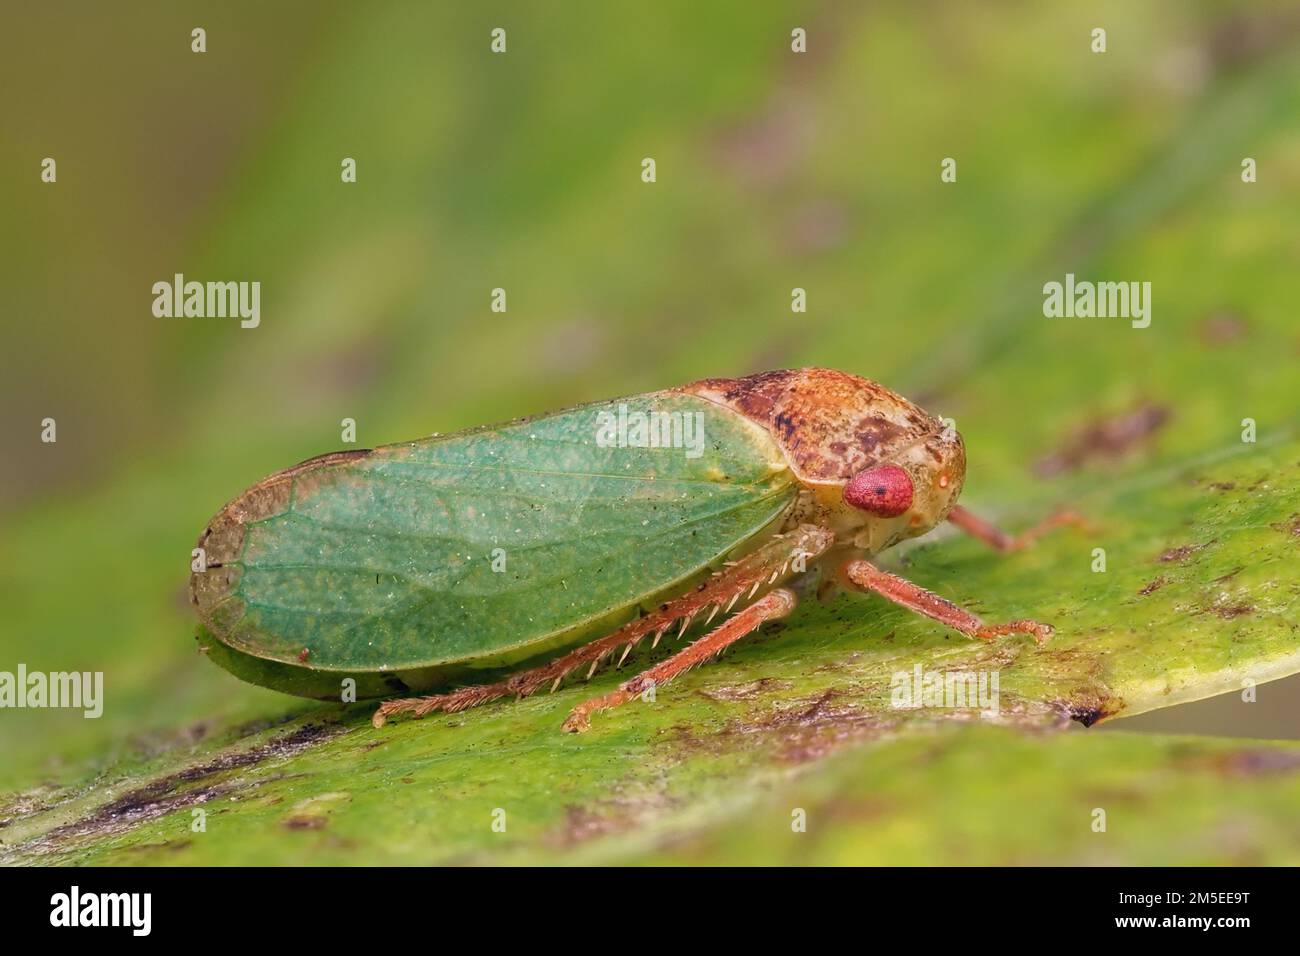 Iassus lanio cicadelle au repos sur la feuille de chêne. Tipperary, Irlande Banque D'Images